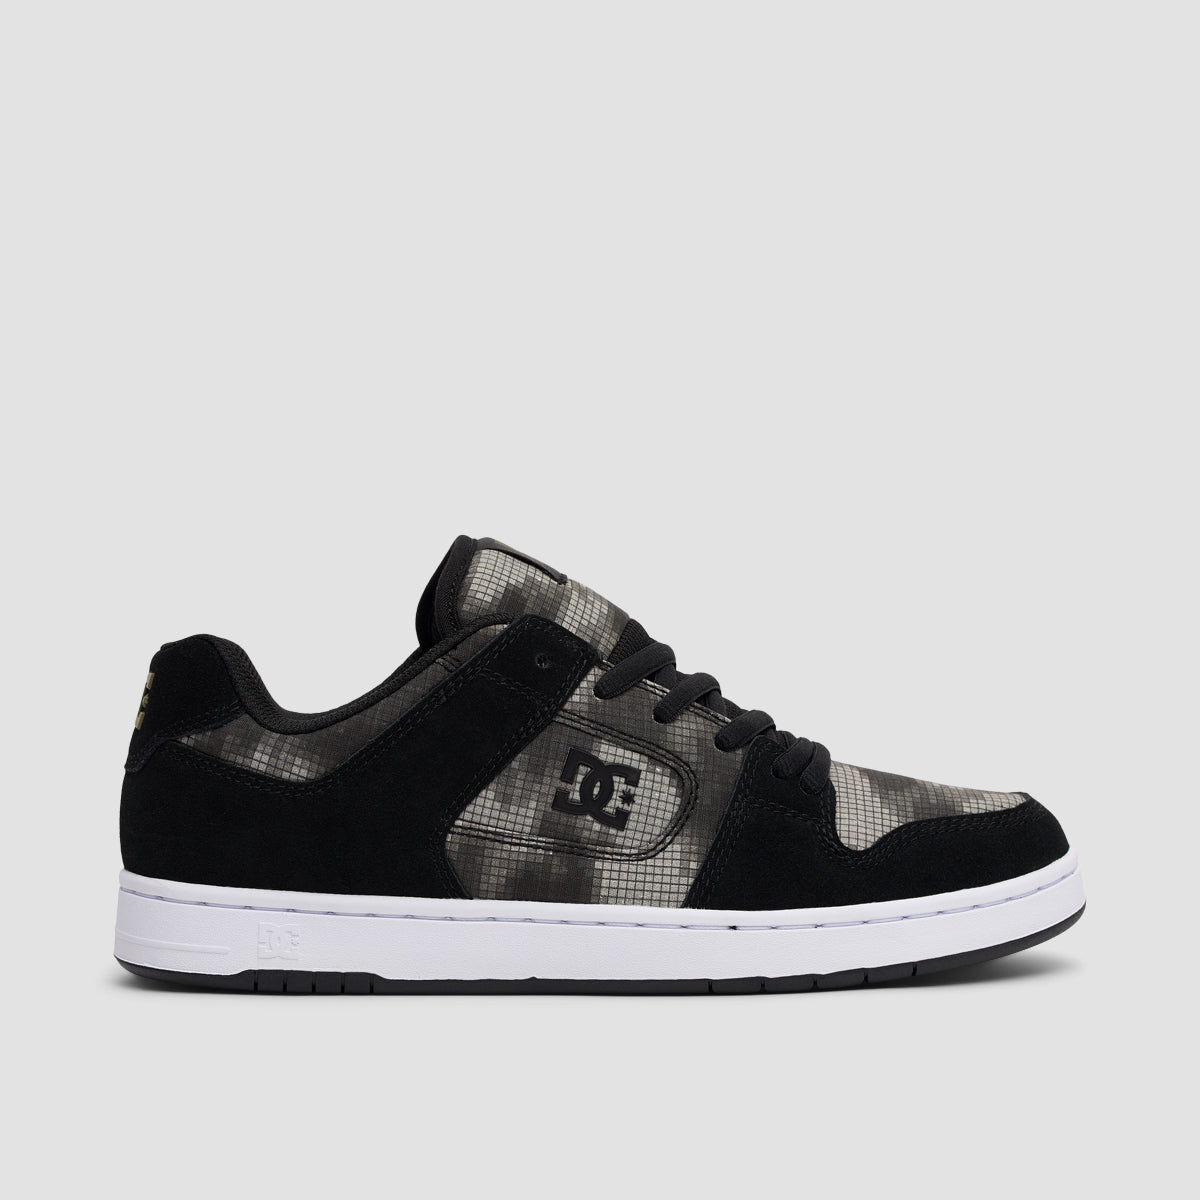 DC Manteca 4 Shoes - Black/Camo Print